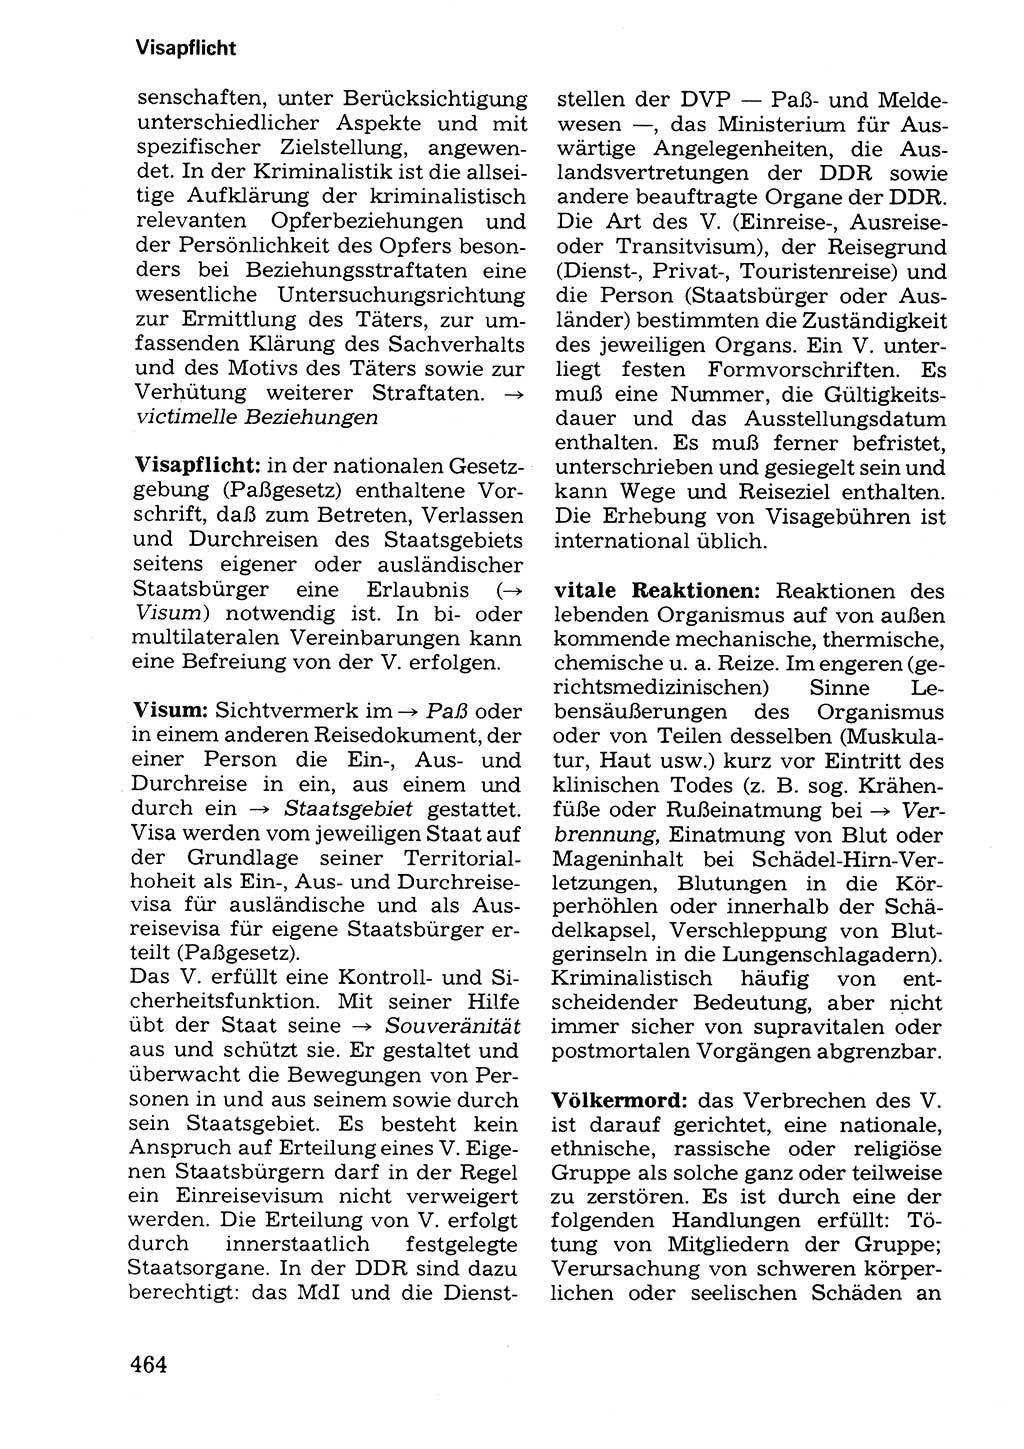 Wörterbuch der sozialistischen Kriminalistik [Deutsche Demokratische Republik (DDR)] 1981, Seite 464 (Wb. soz. Krim. DDR 1981, S. 464)